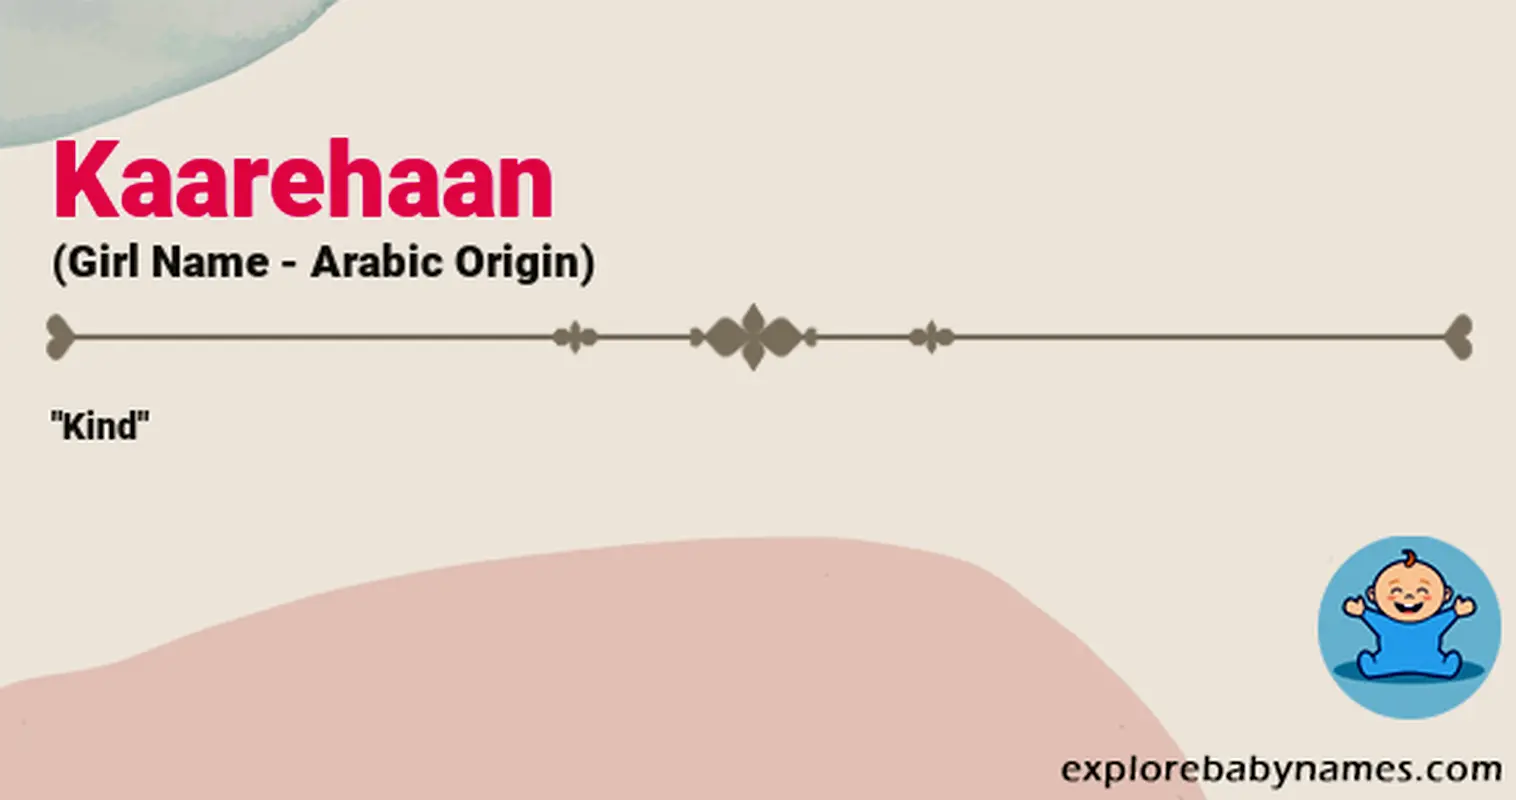 Meaning of Kaarehaan